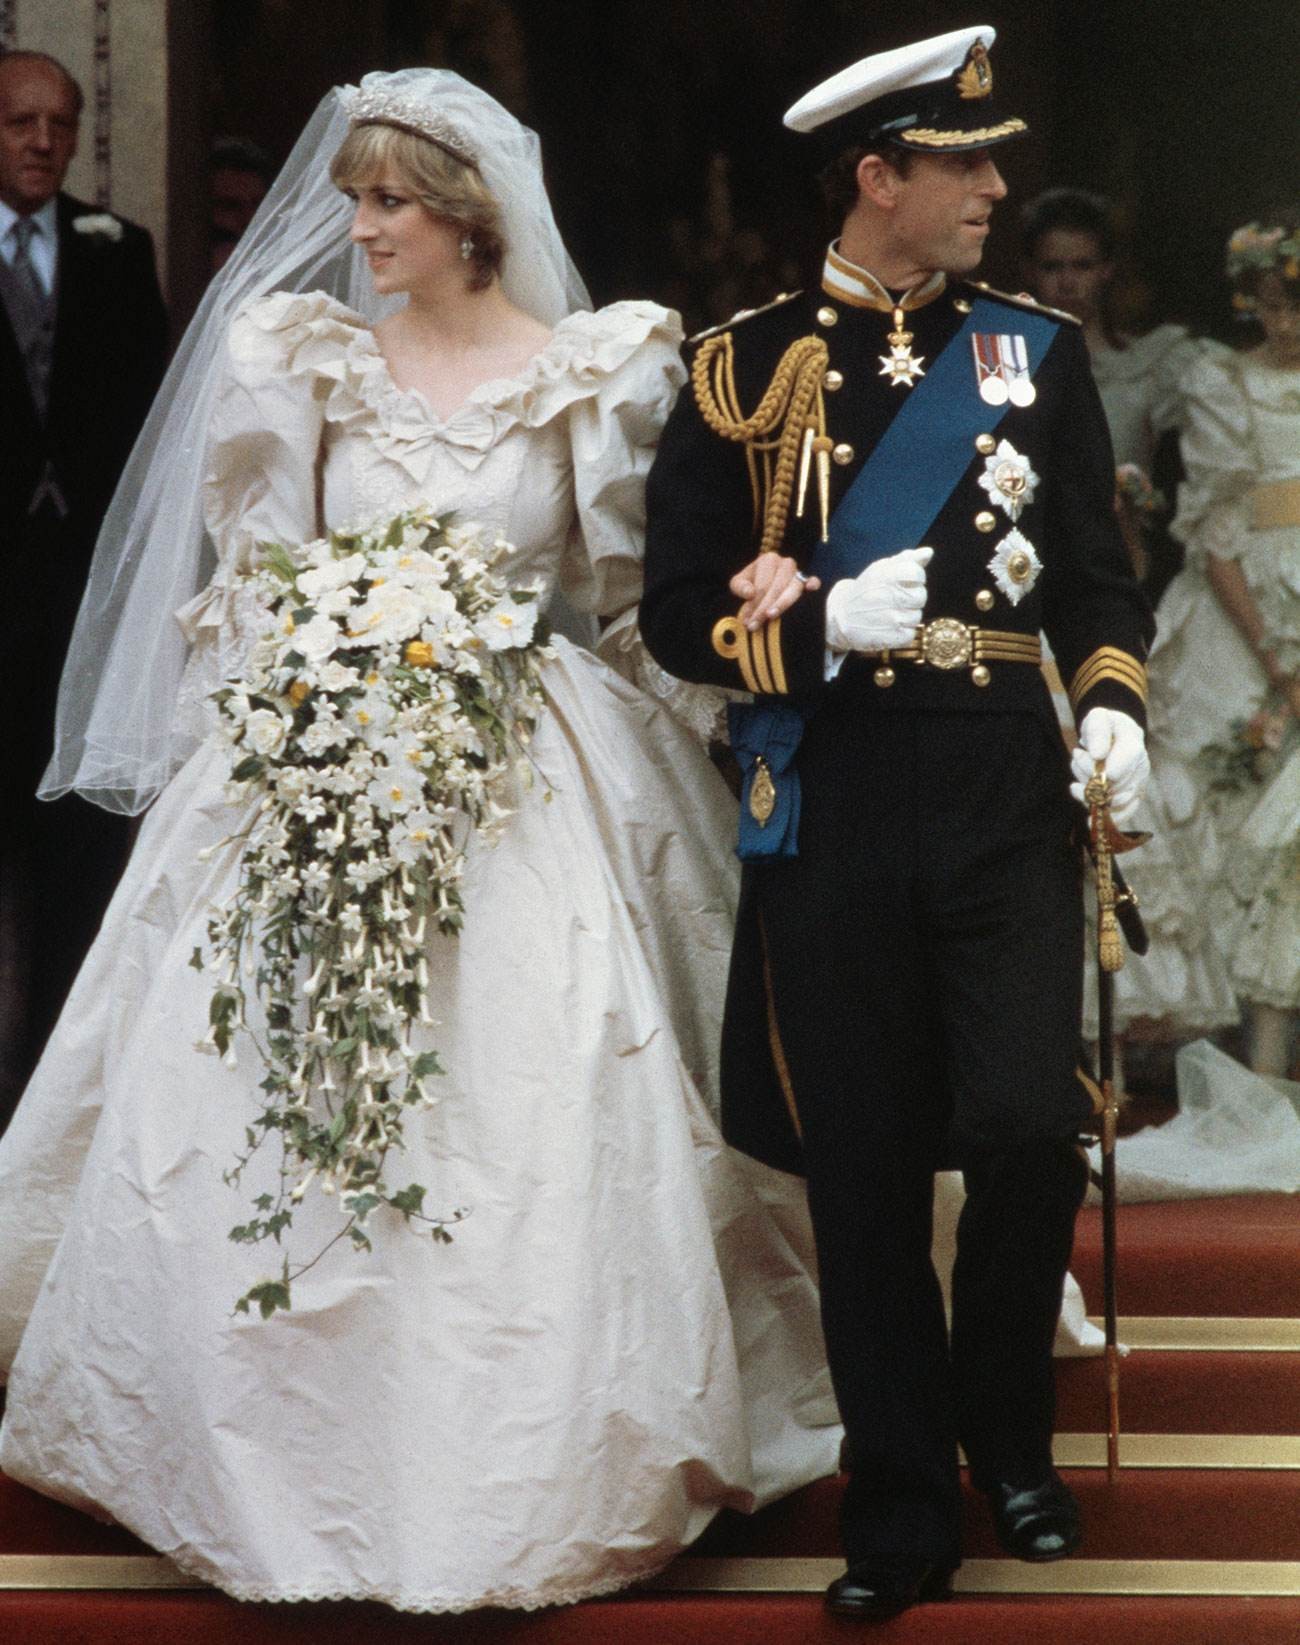 被誉为世纪婚礼中的戴安娜王妃,一头短发也将婚纱演绎得别有风味